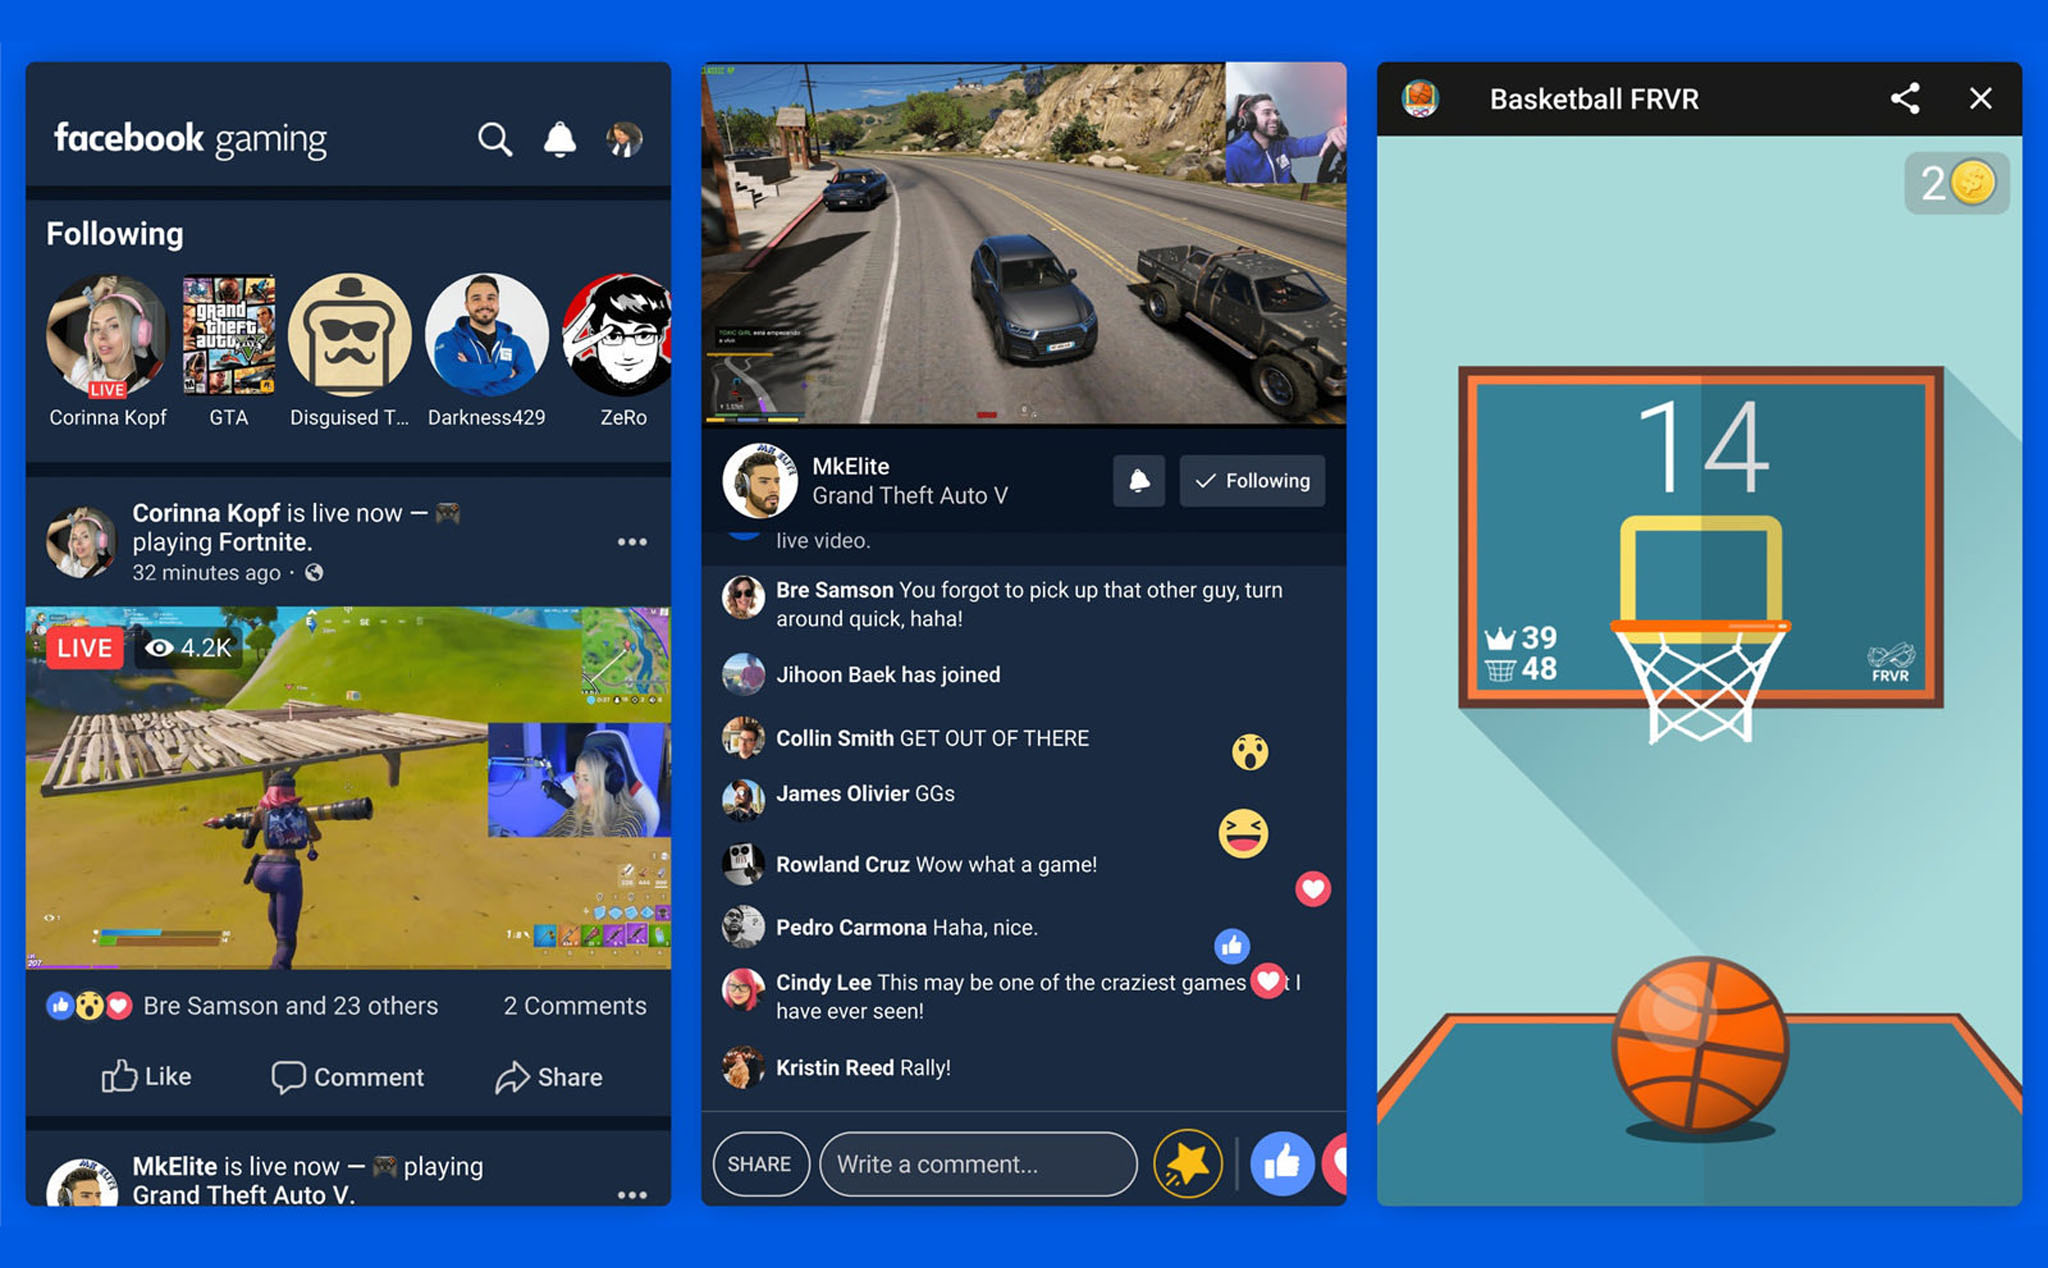 Facebook Gaming app: Với ứng dụng Facebook Gaming, bạn có thể thỏa sức chơi game mà không cần phải trả bất kỳ chi phí nào. Bên cạnh đó, ứng dụng cũng đem lại trải nghiệm giải trí mới lạ, hấp dẫn.